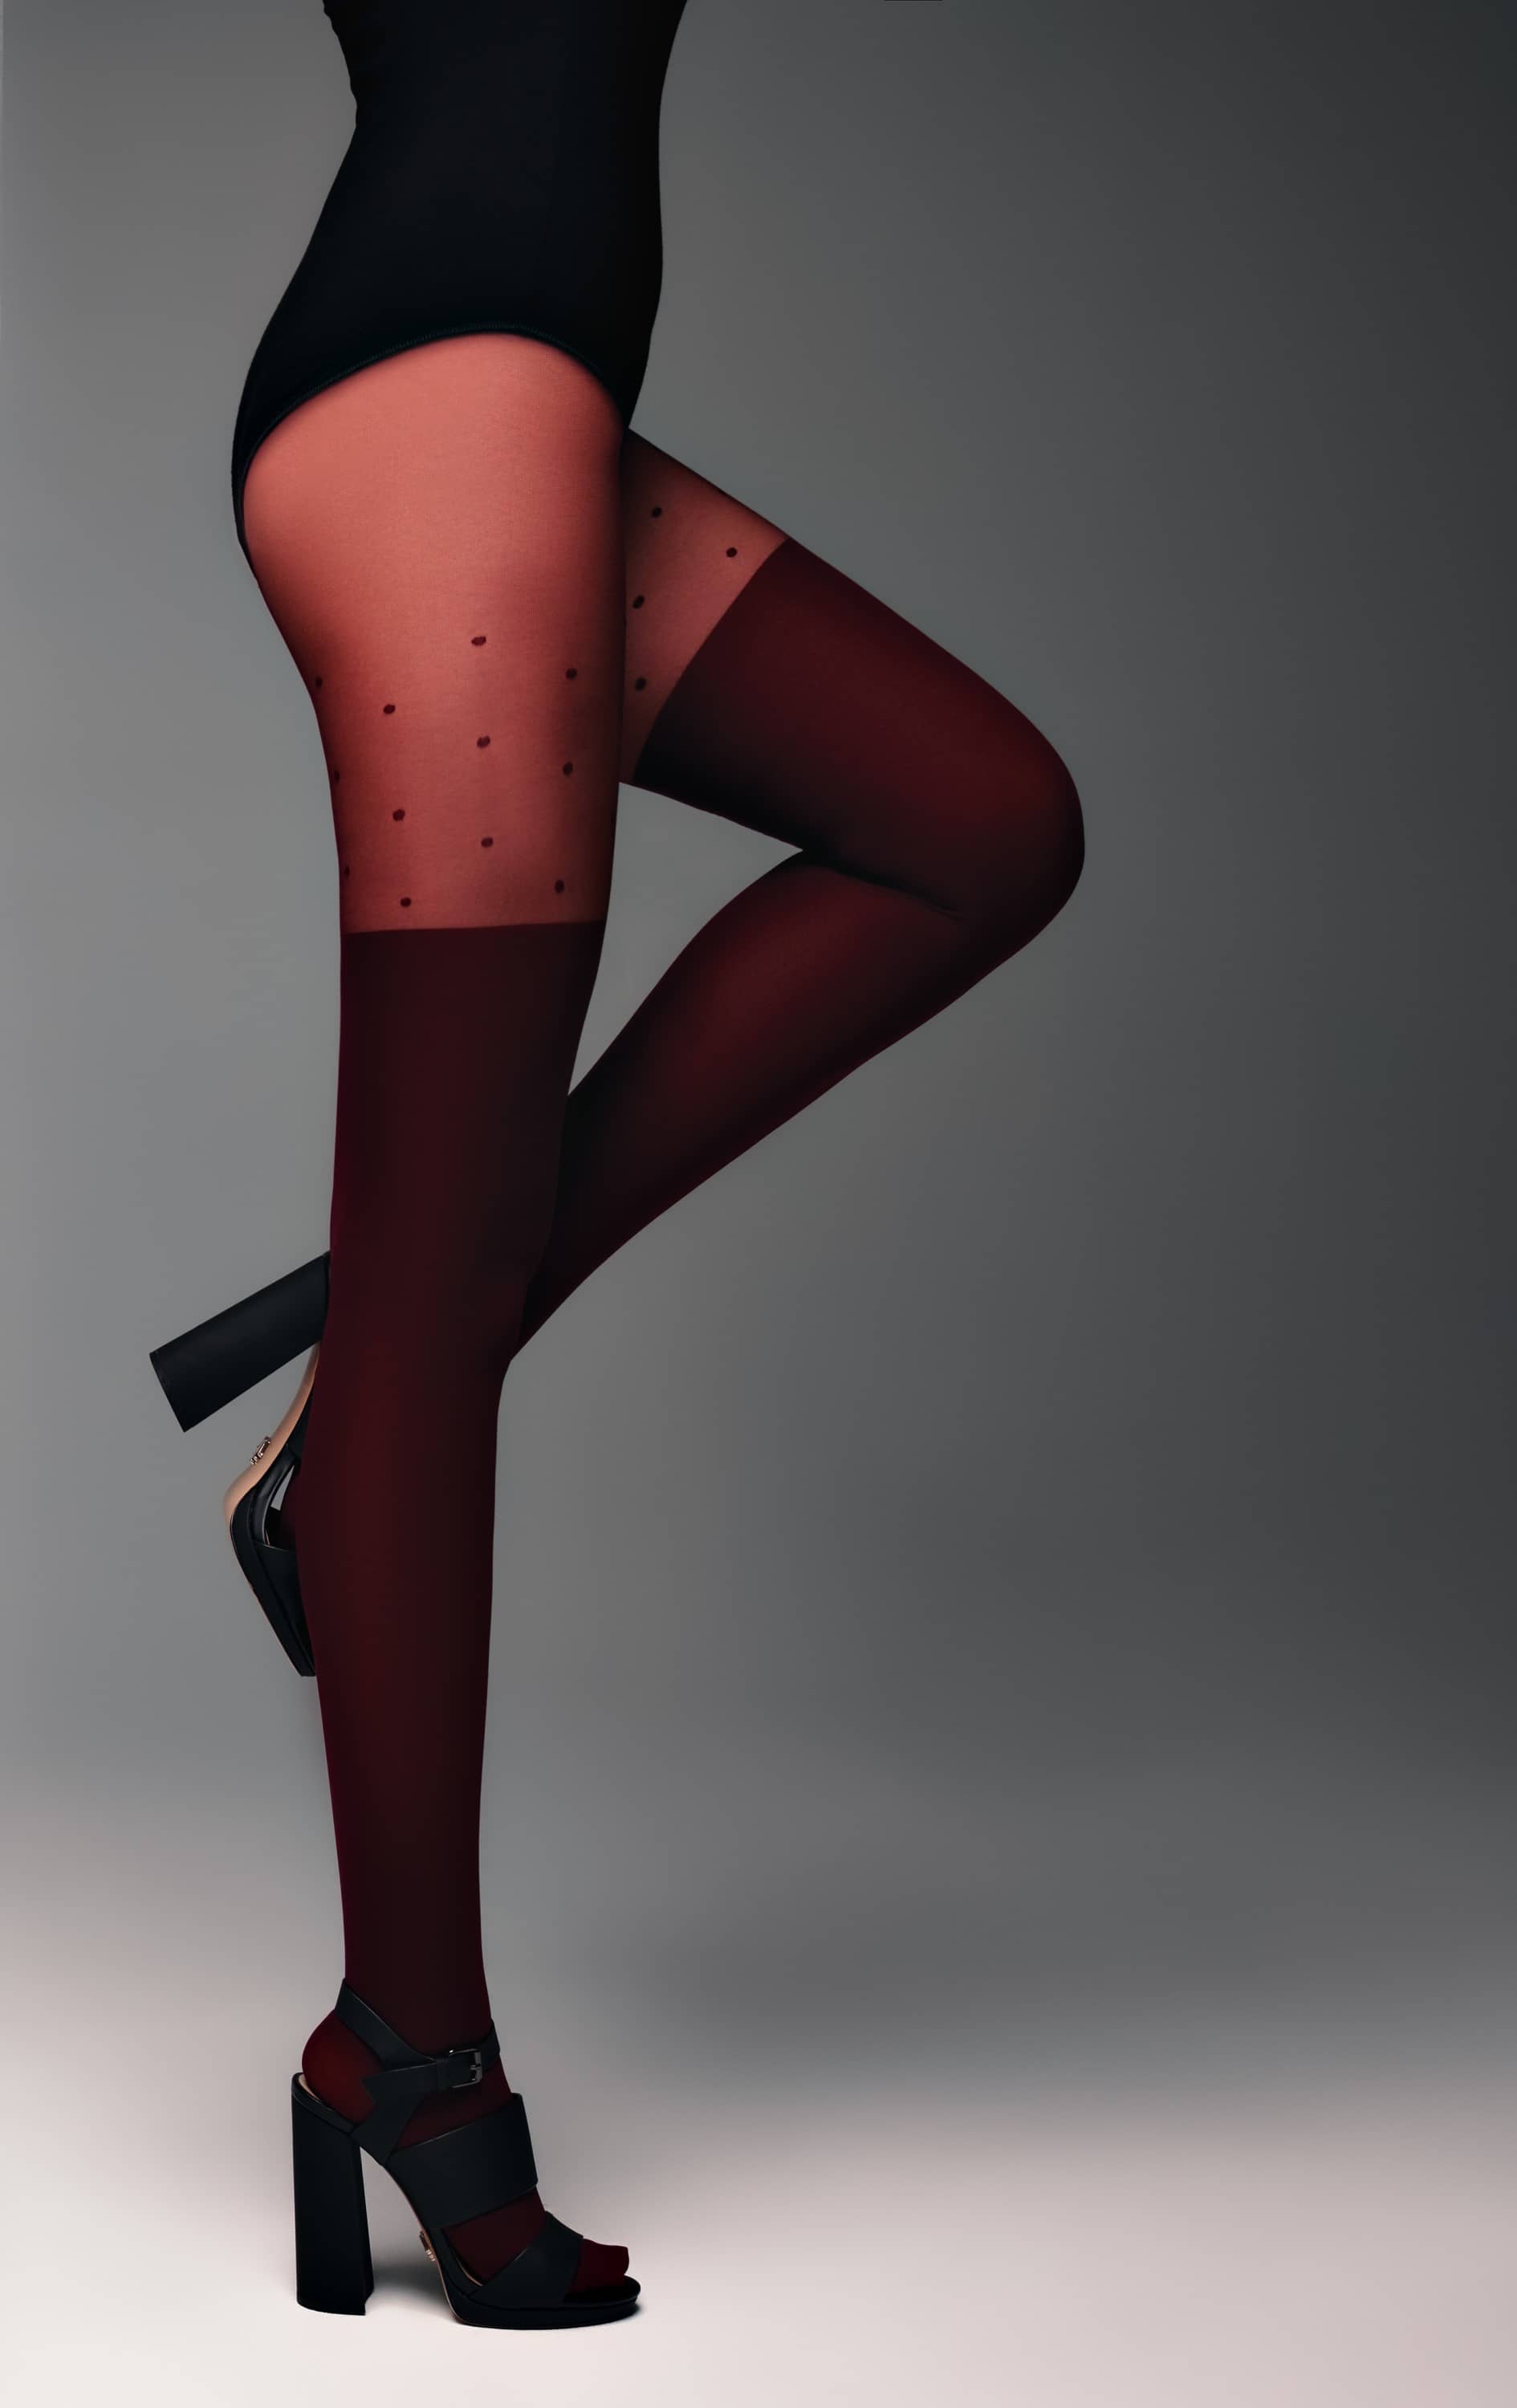 Hlačne nogavice v videzu nadkolenk s pikčastim zgornjim delom Conte Sensation v bordo rdeči barvi